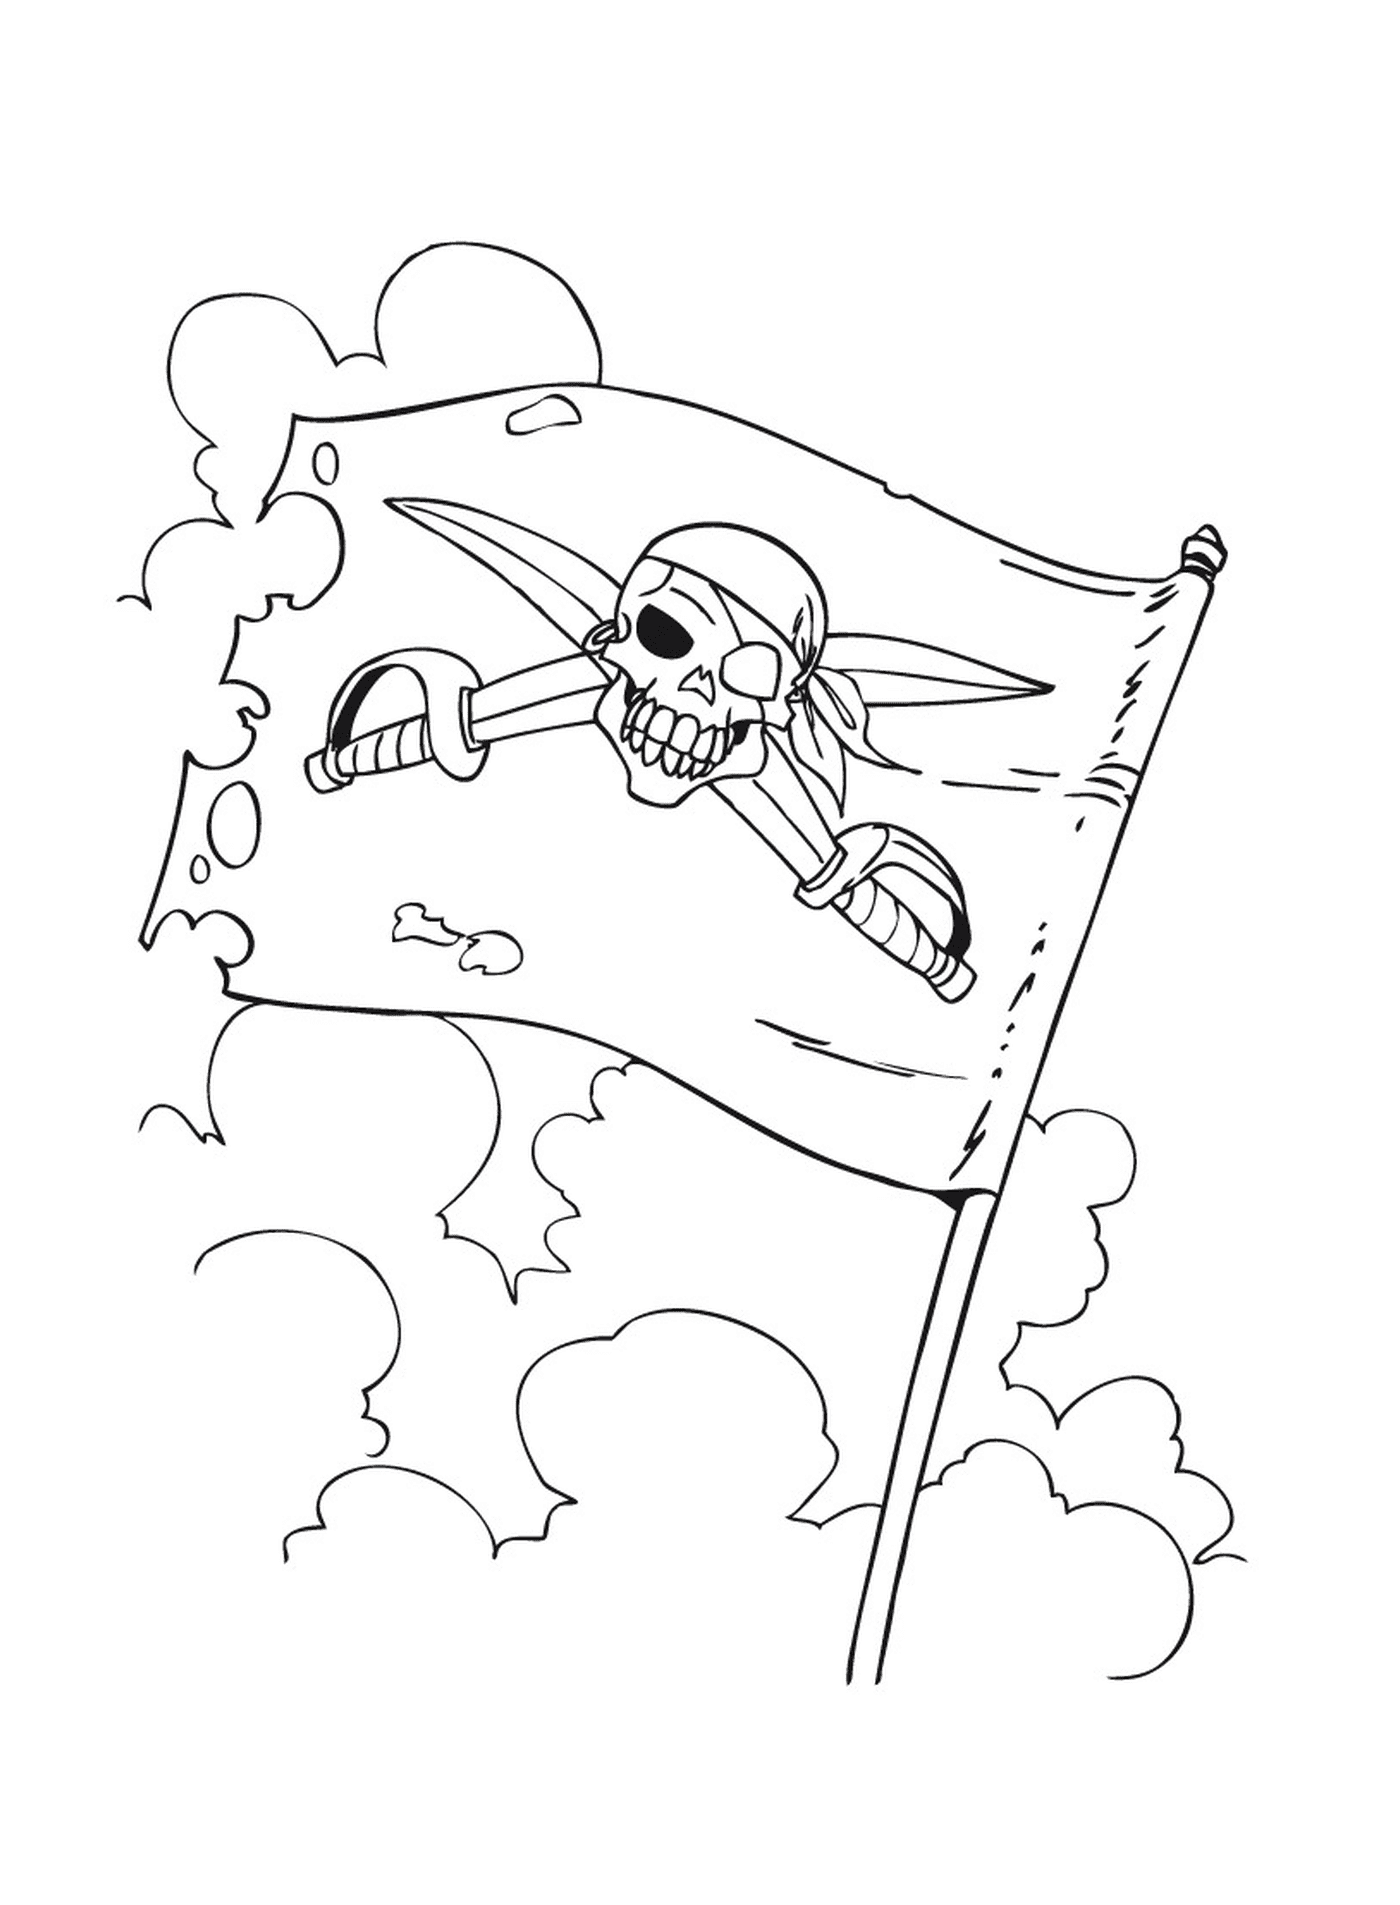  Bandeira pirata ameaçadora 